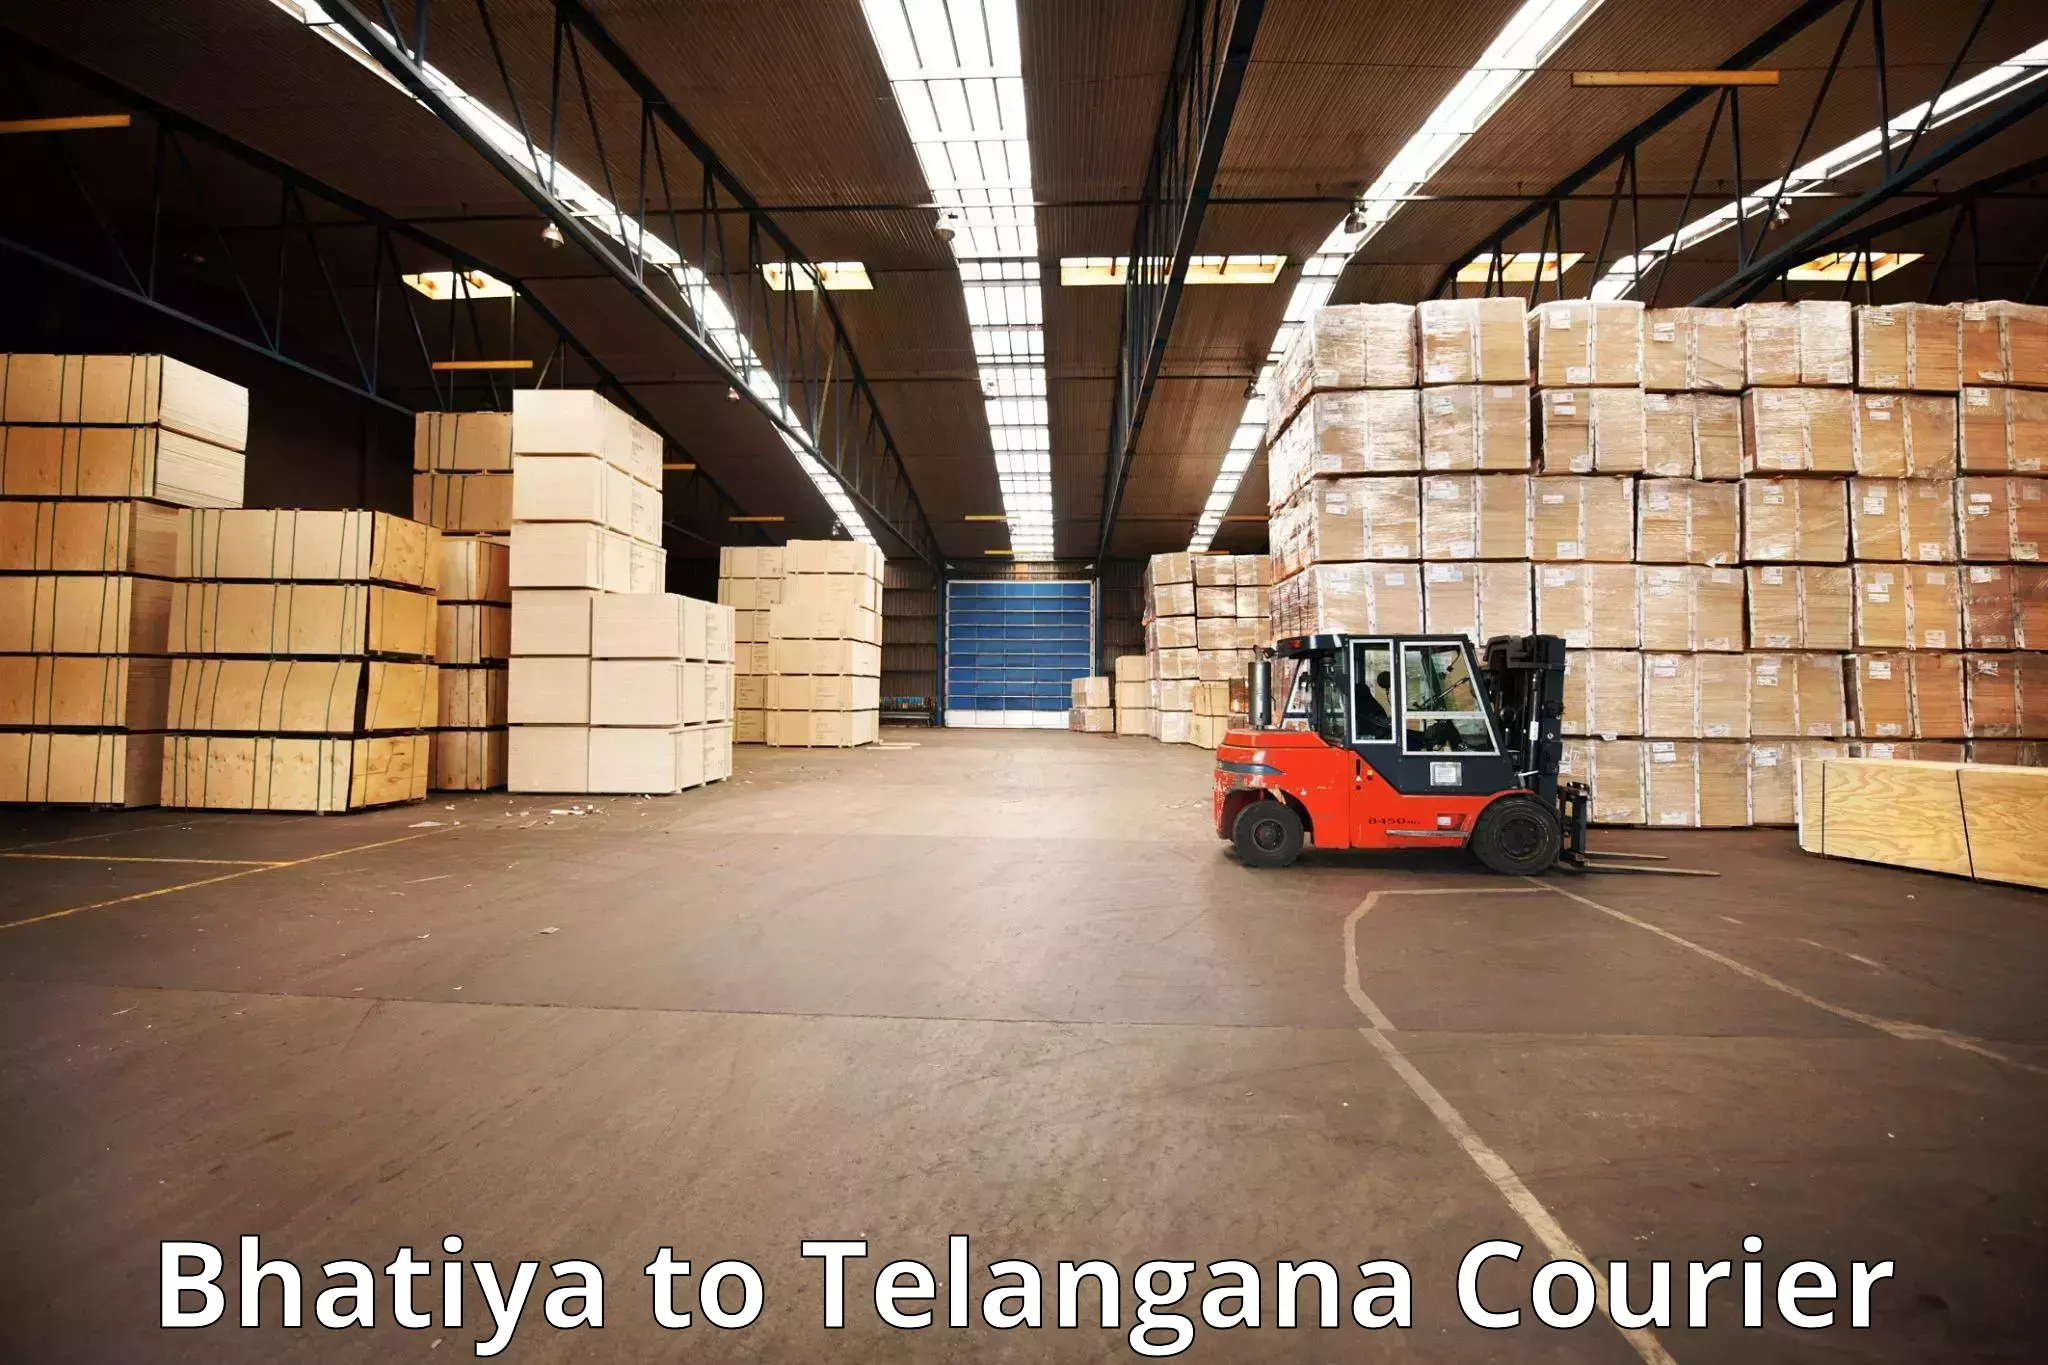 Express baggage shipping in Bhatiya to Tiryani